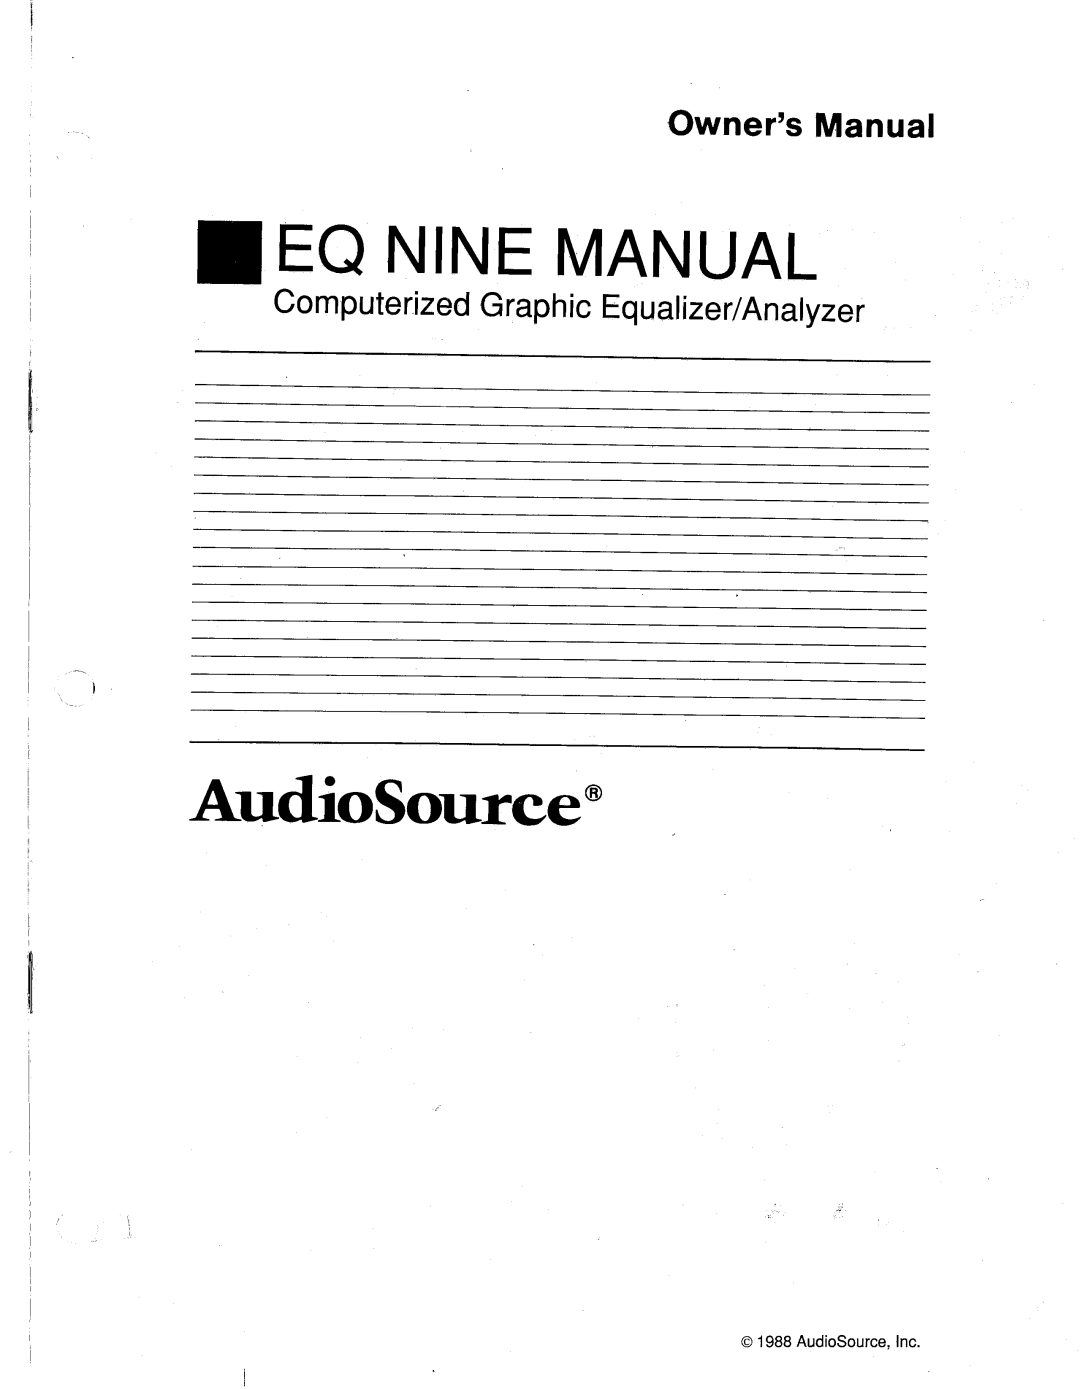 AudioSource Computerized Graphic Equalizer/Analyzer, EQ NINE manual 